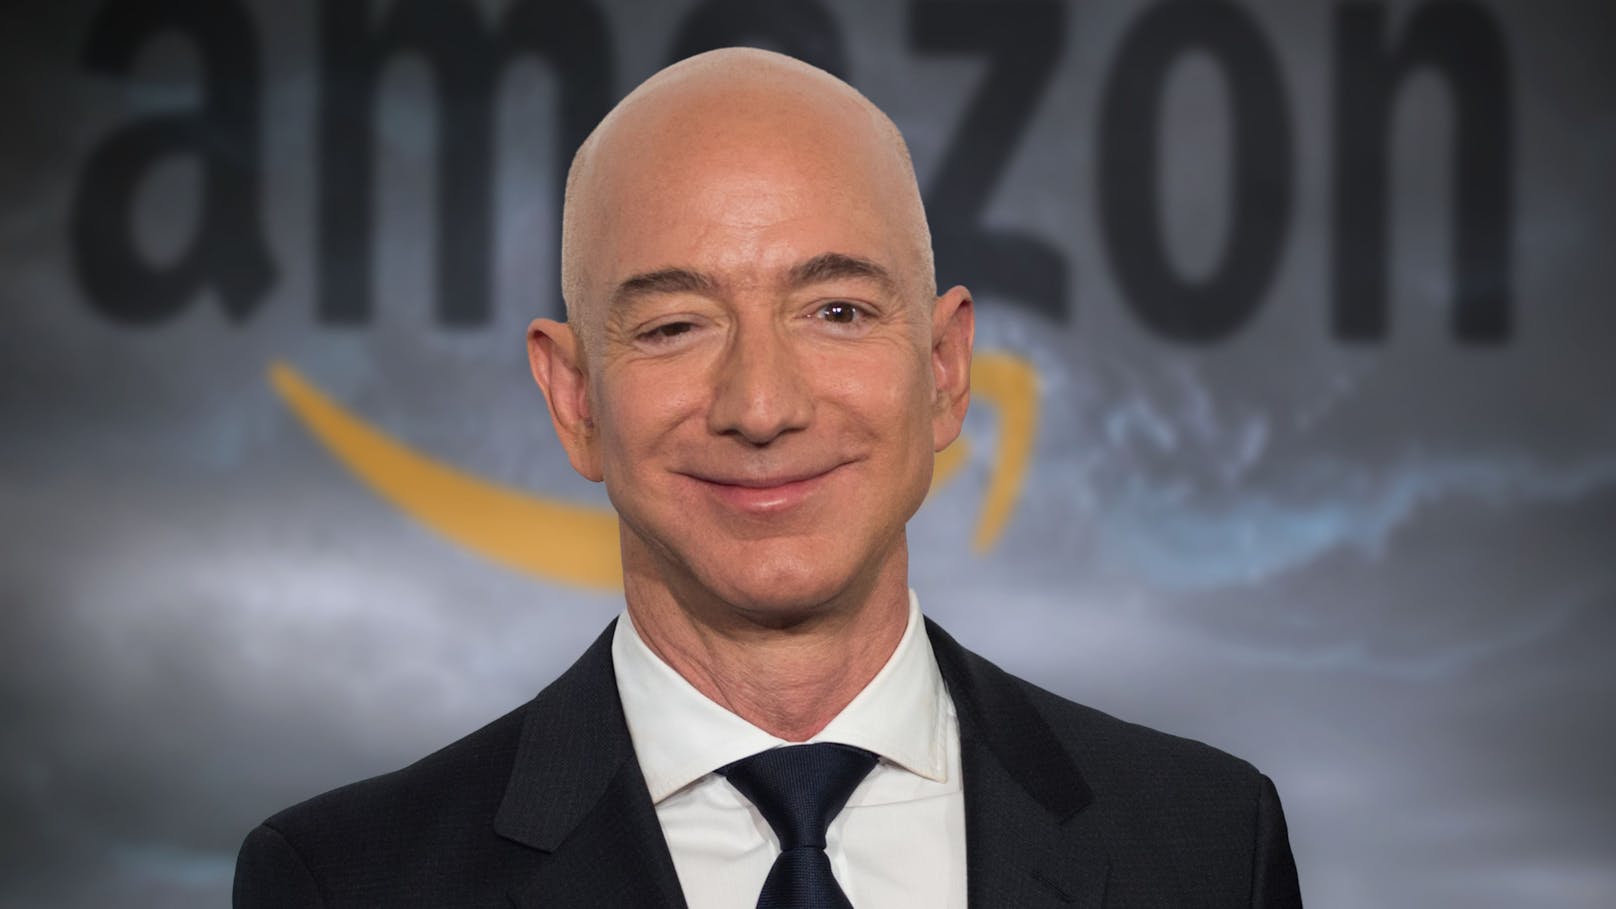 <strong>Platz 1:</strong> Amazon-Gründer Jeff Bezos' Vermögen berechnet Bloomberg auf 200 Milliarden Dollar.